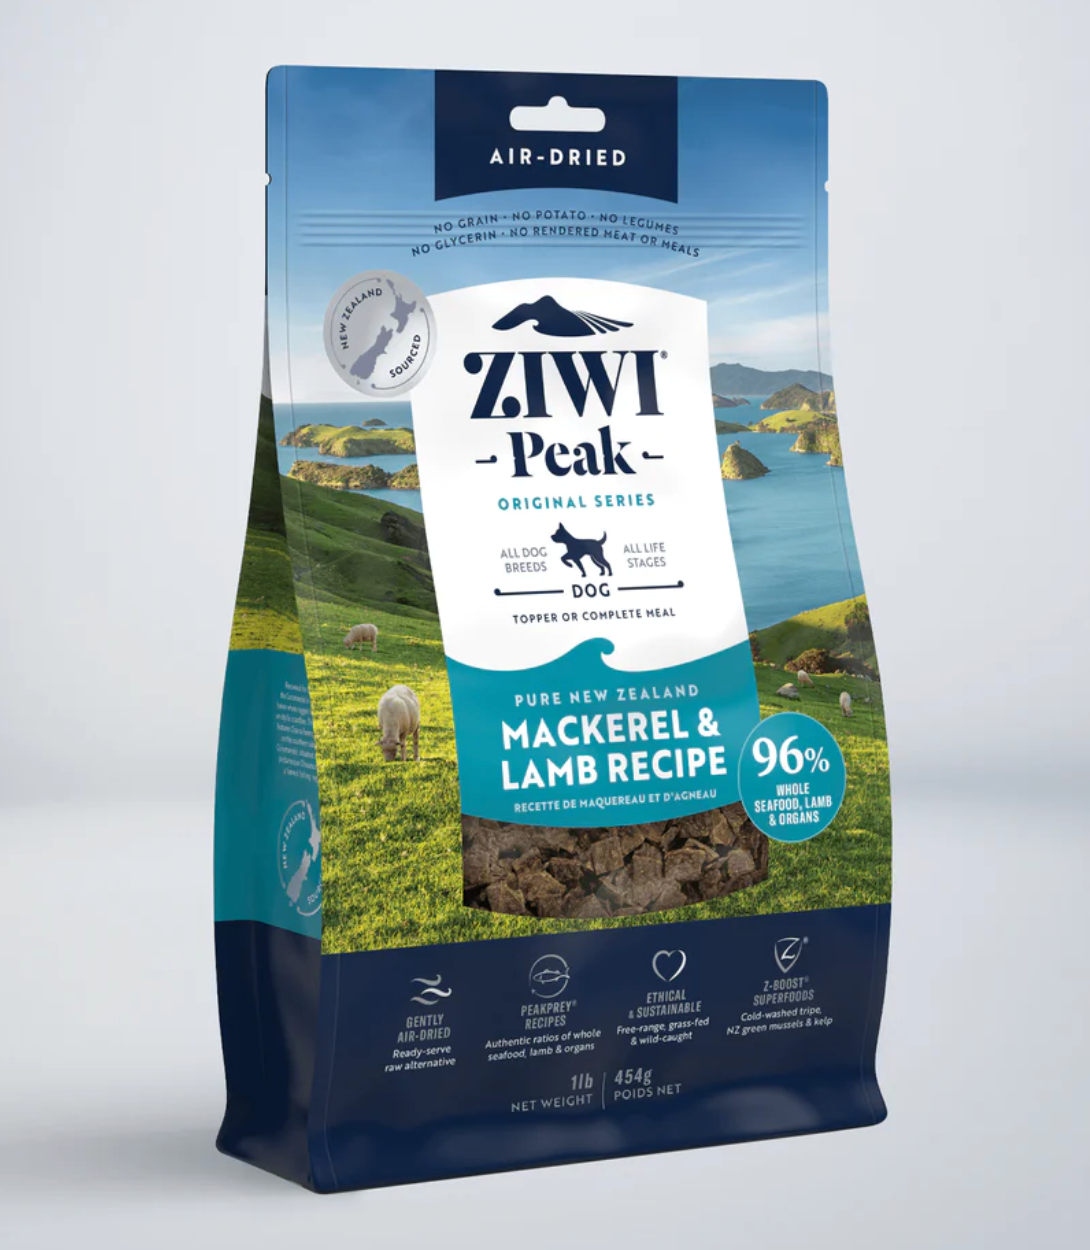 Ziwi Peak - Mackerel & Lamb Recipe